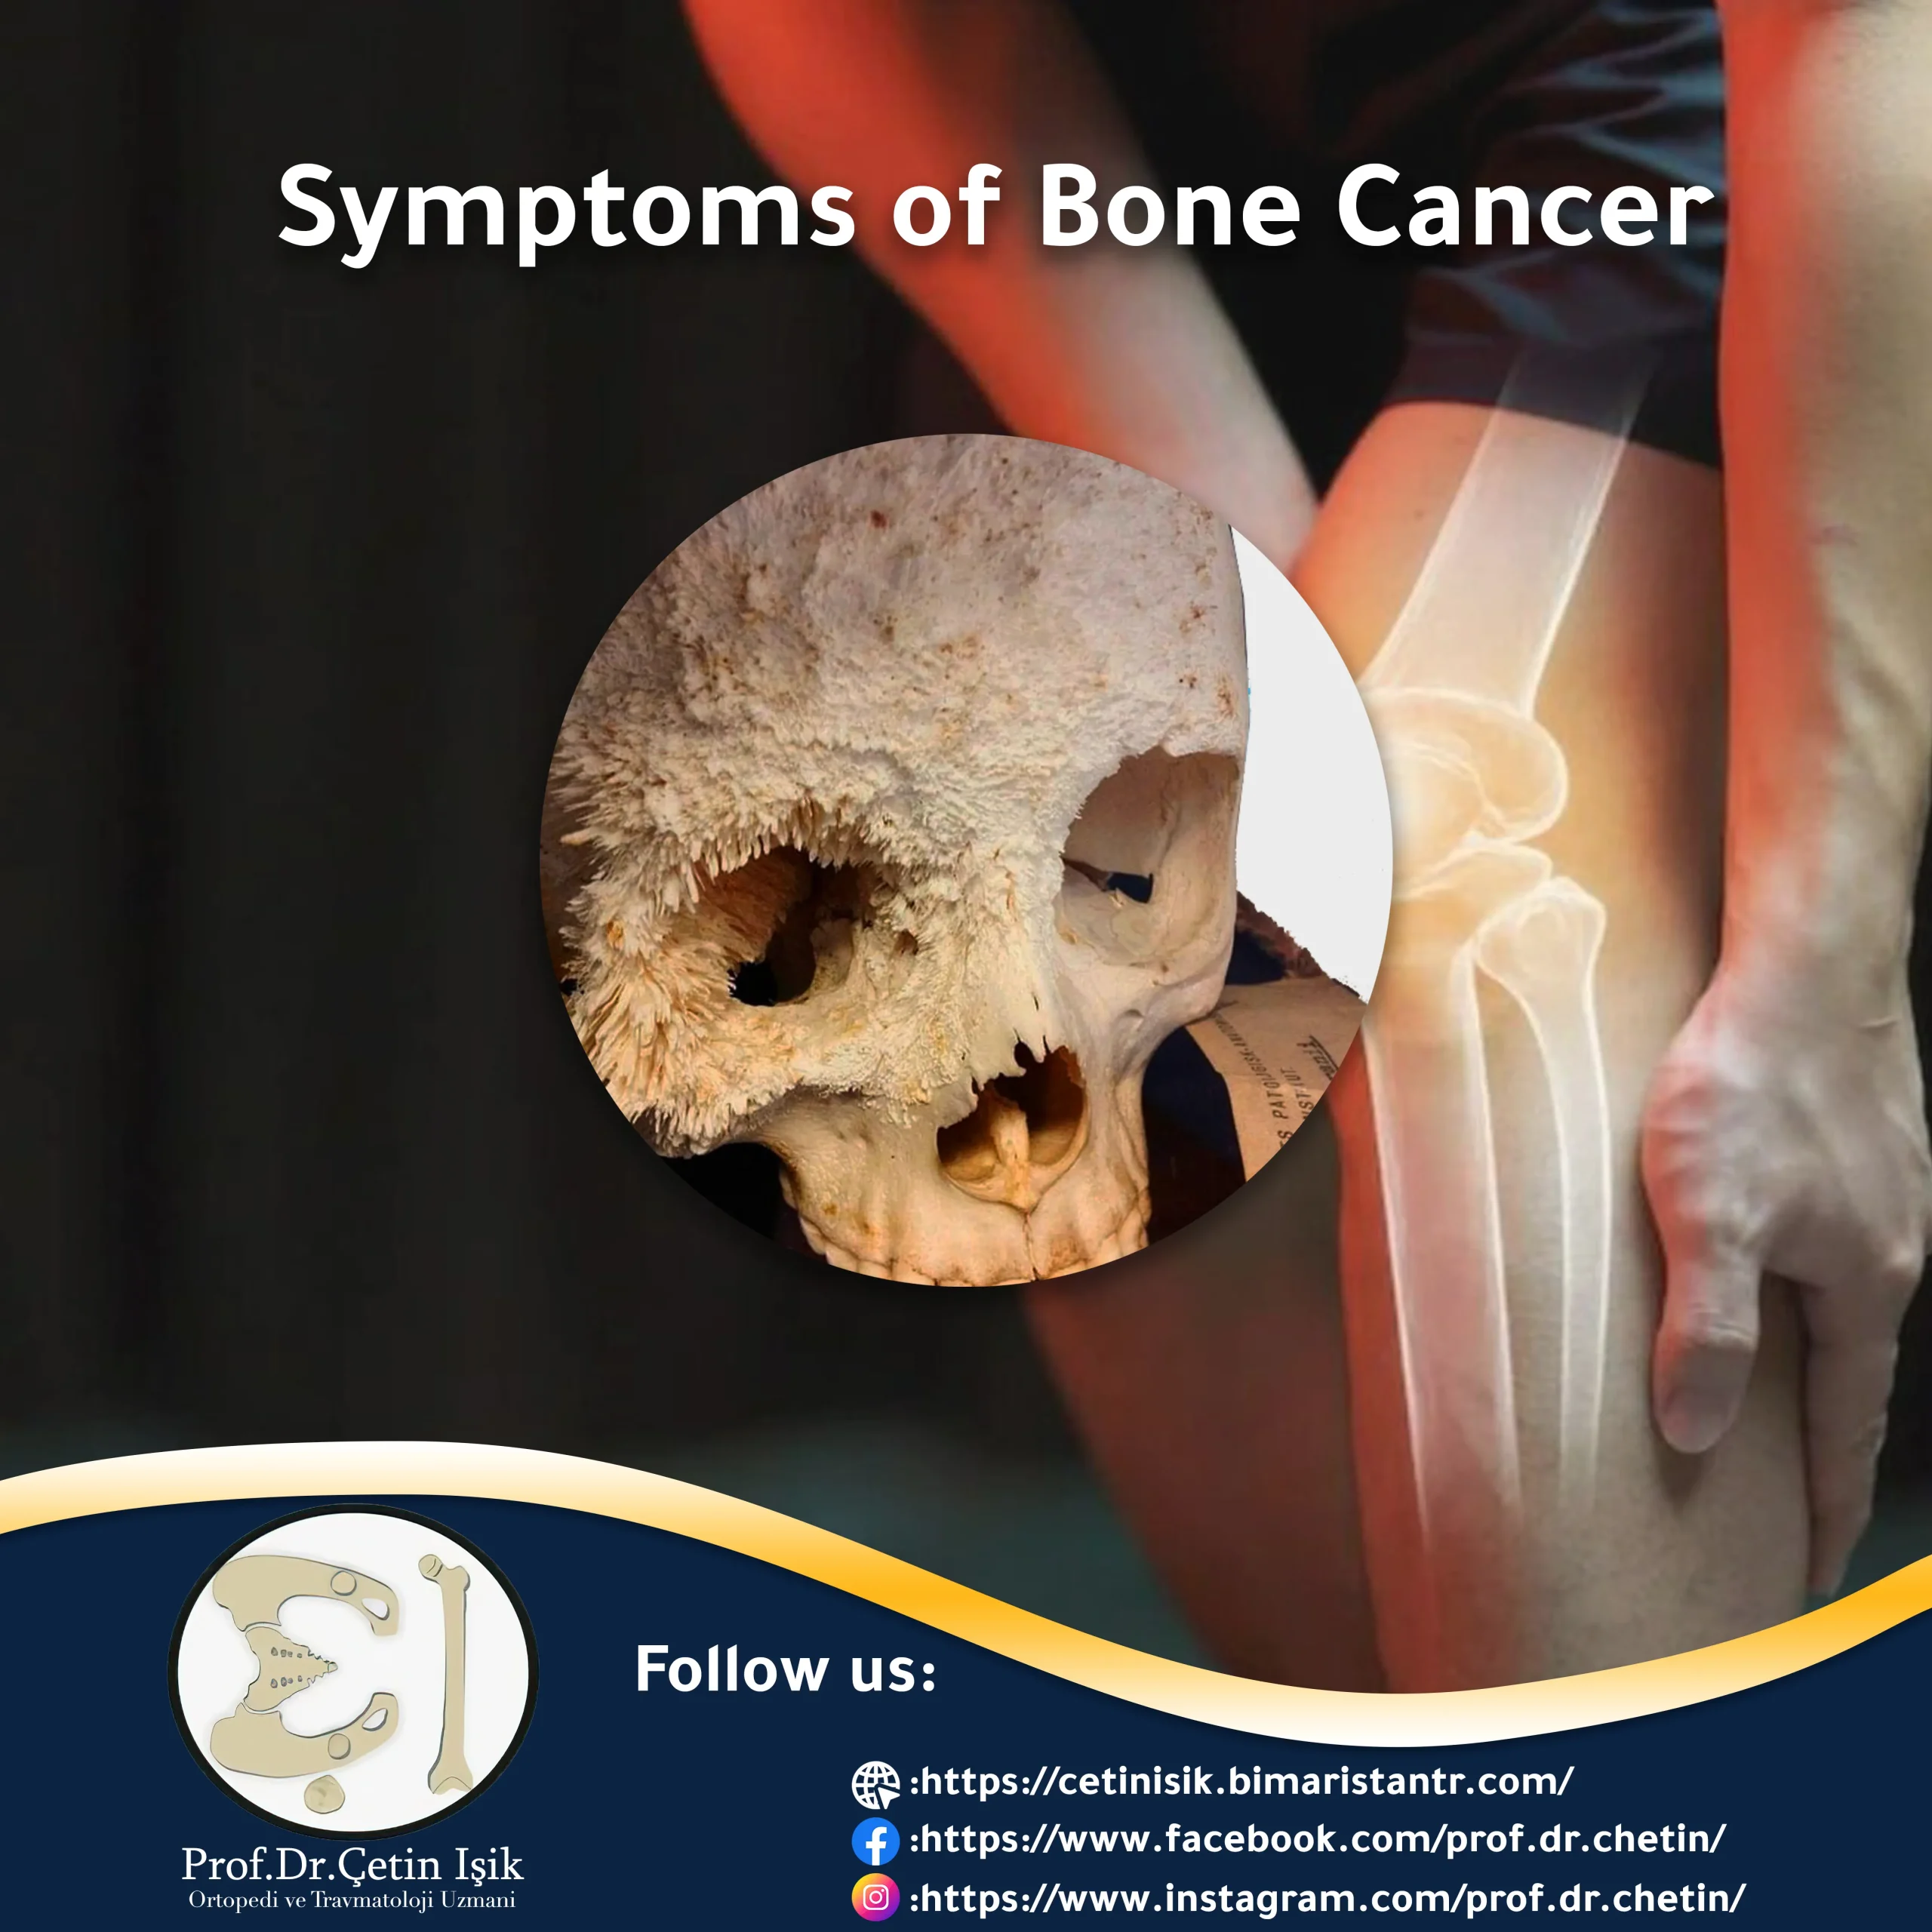 Image showing bone cancer metastasizing to the skull bone.